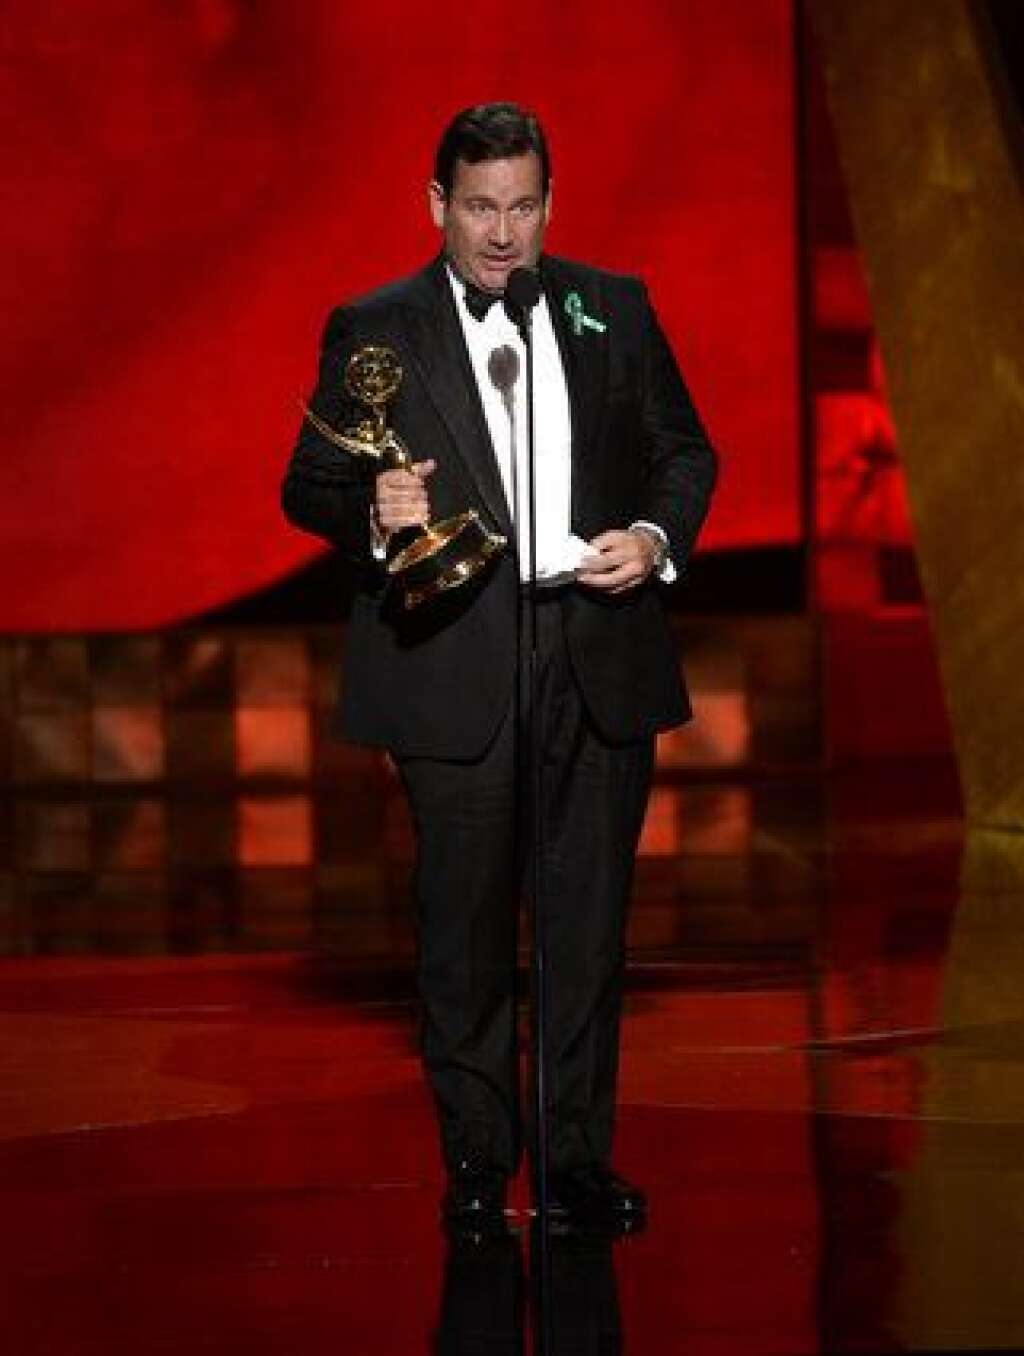 La 67ème cérémonie des Emmy Awards - David Nutter reçoit le prix de meilleur réalisateur pour la série Game of Thrones